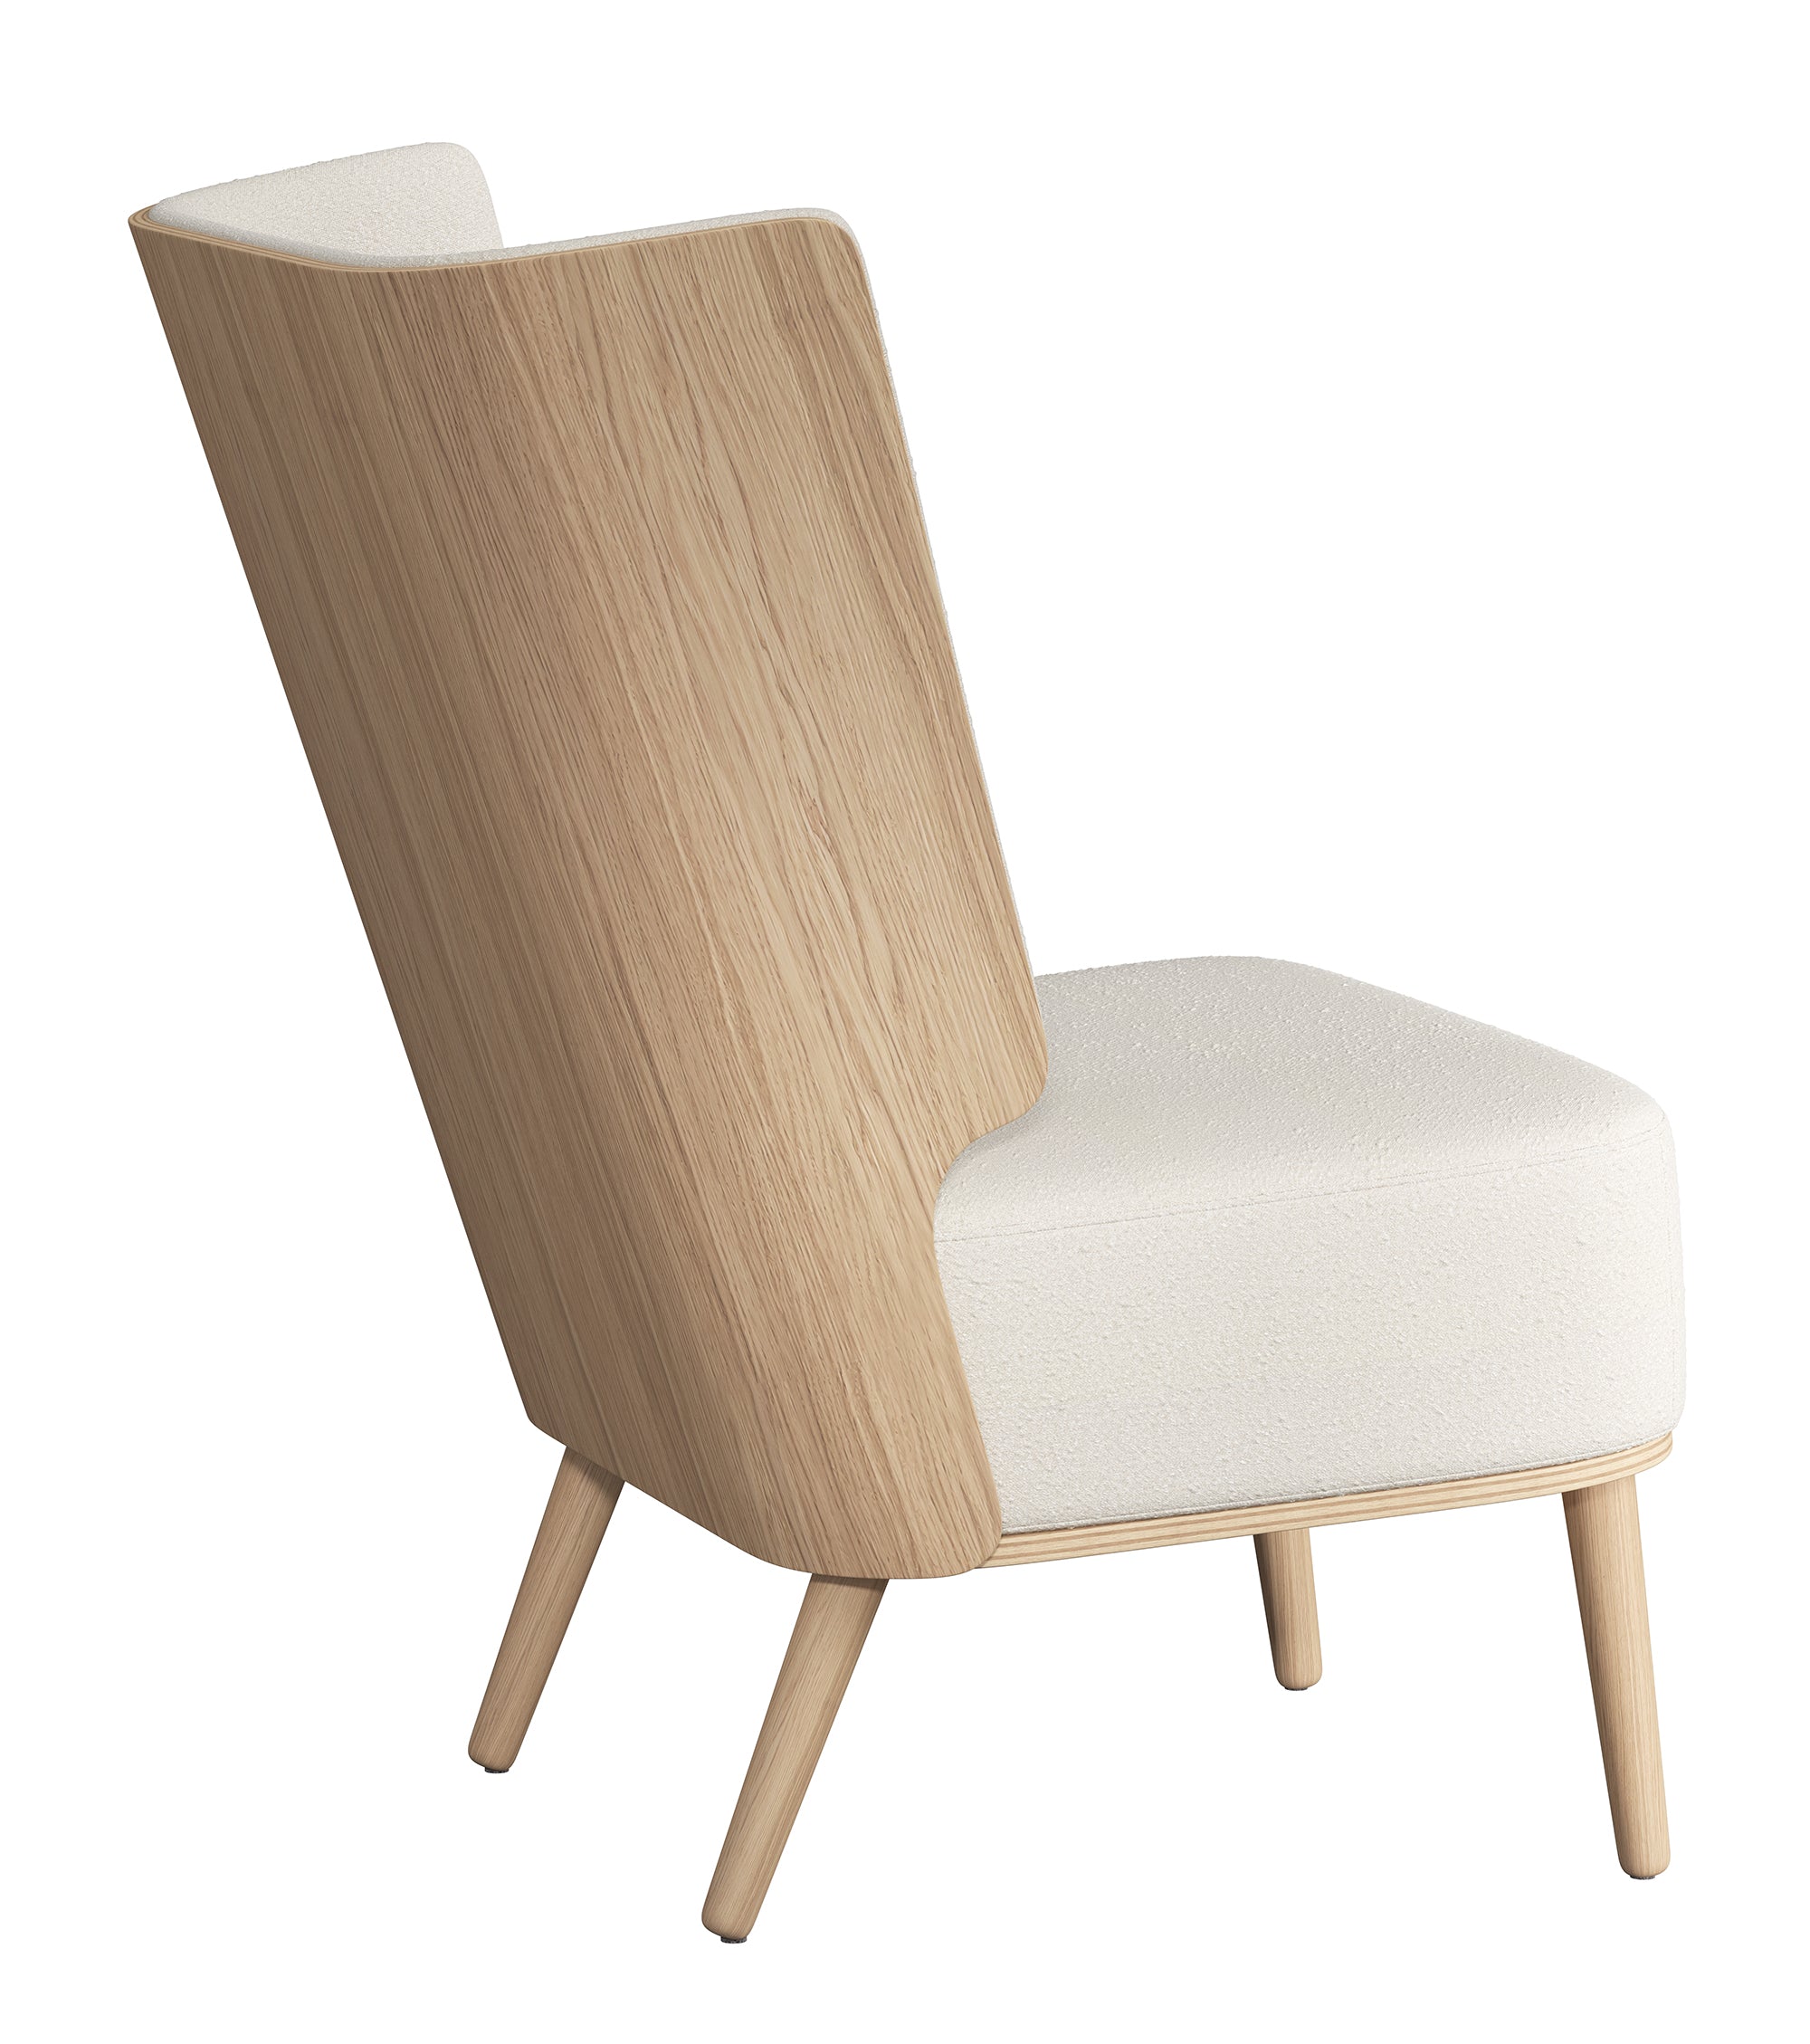 SERENA lounge chair - natural oak/white bouclé